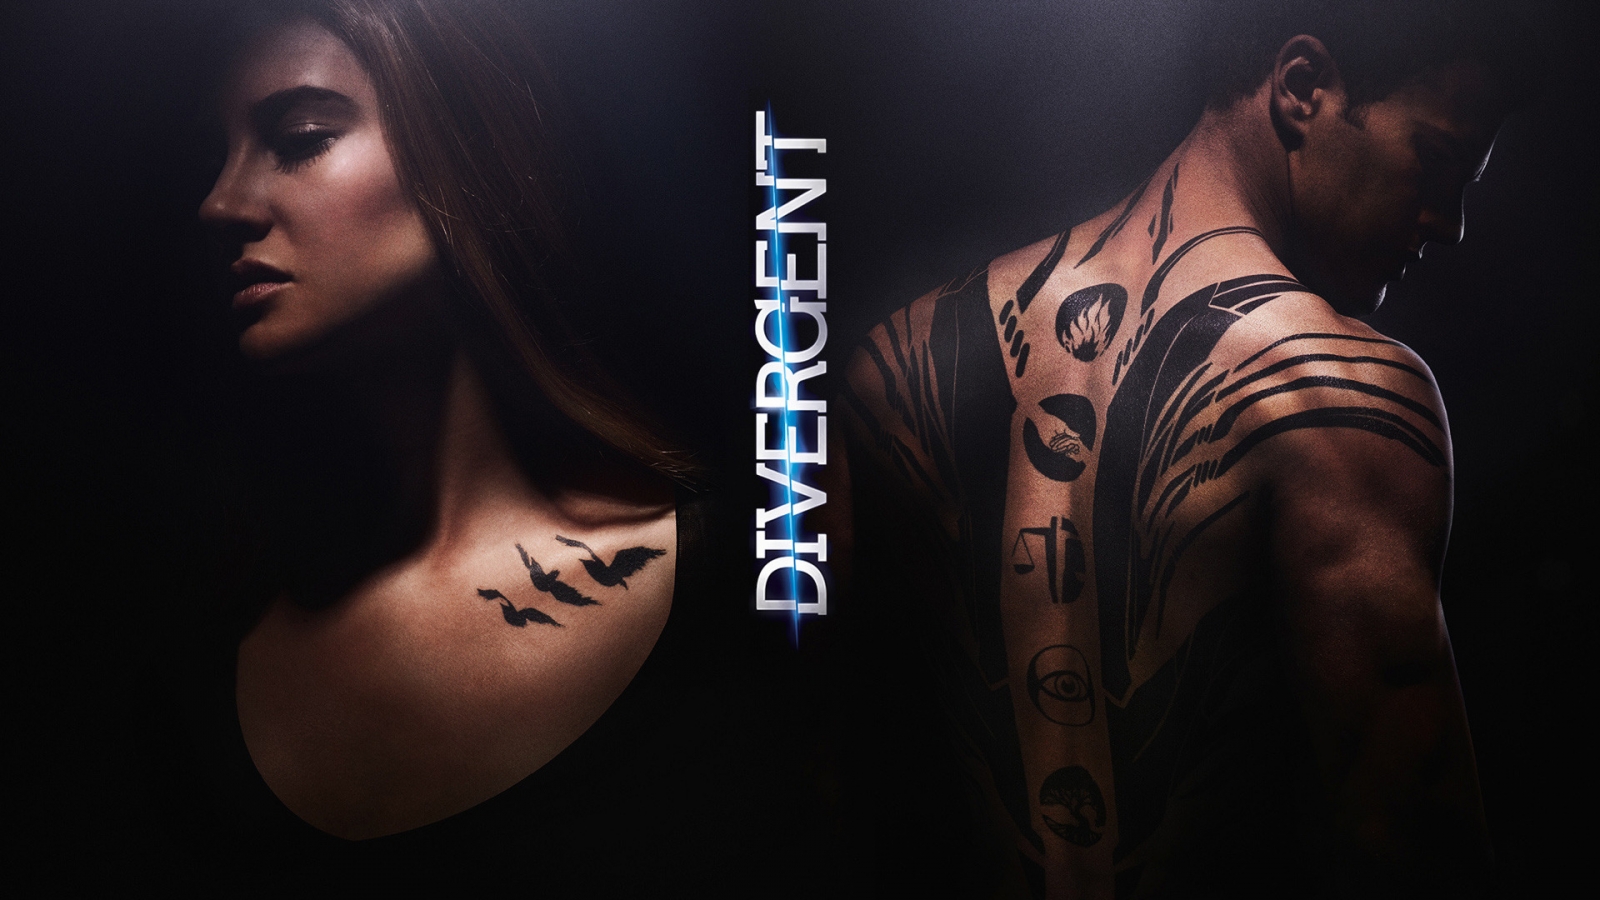 Divergent Movie for 1600 x 900 HDTV resolution